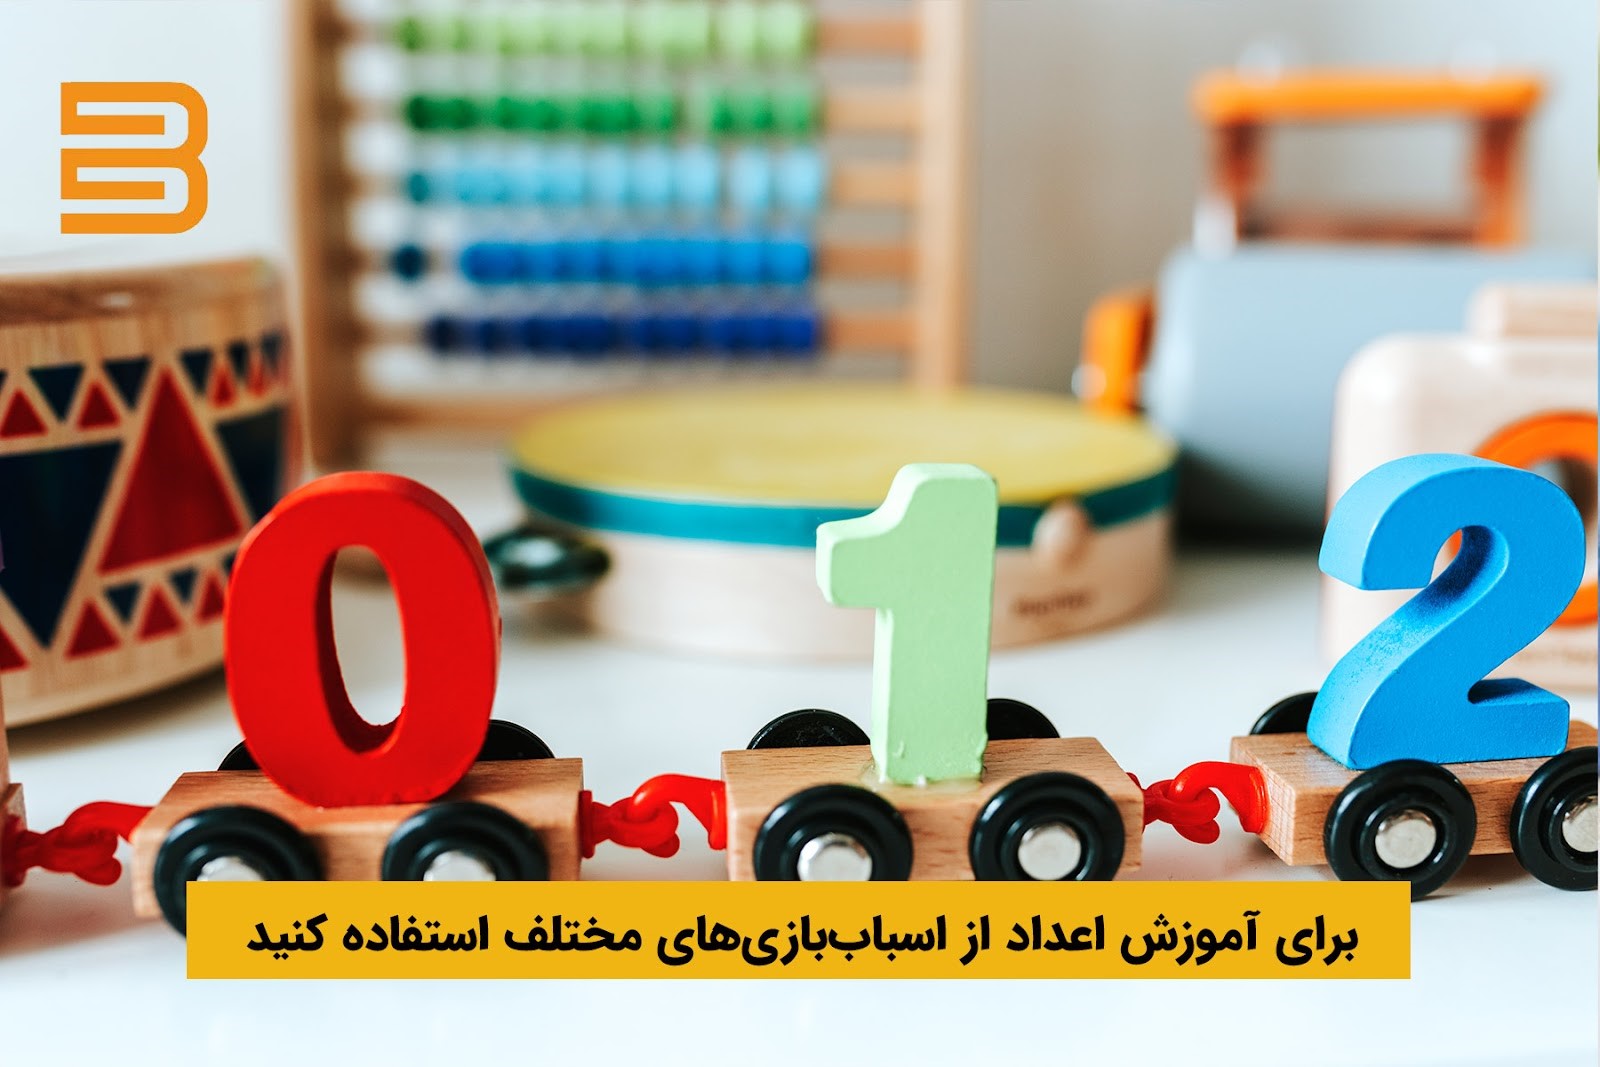 آموزش اعداد به کودکان با بازی و وسایل چوبی